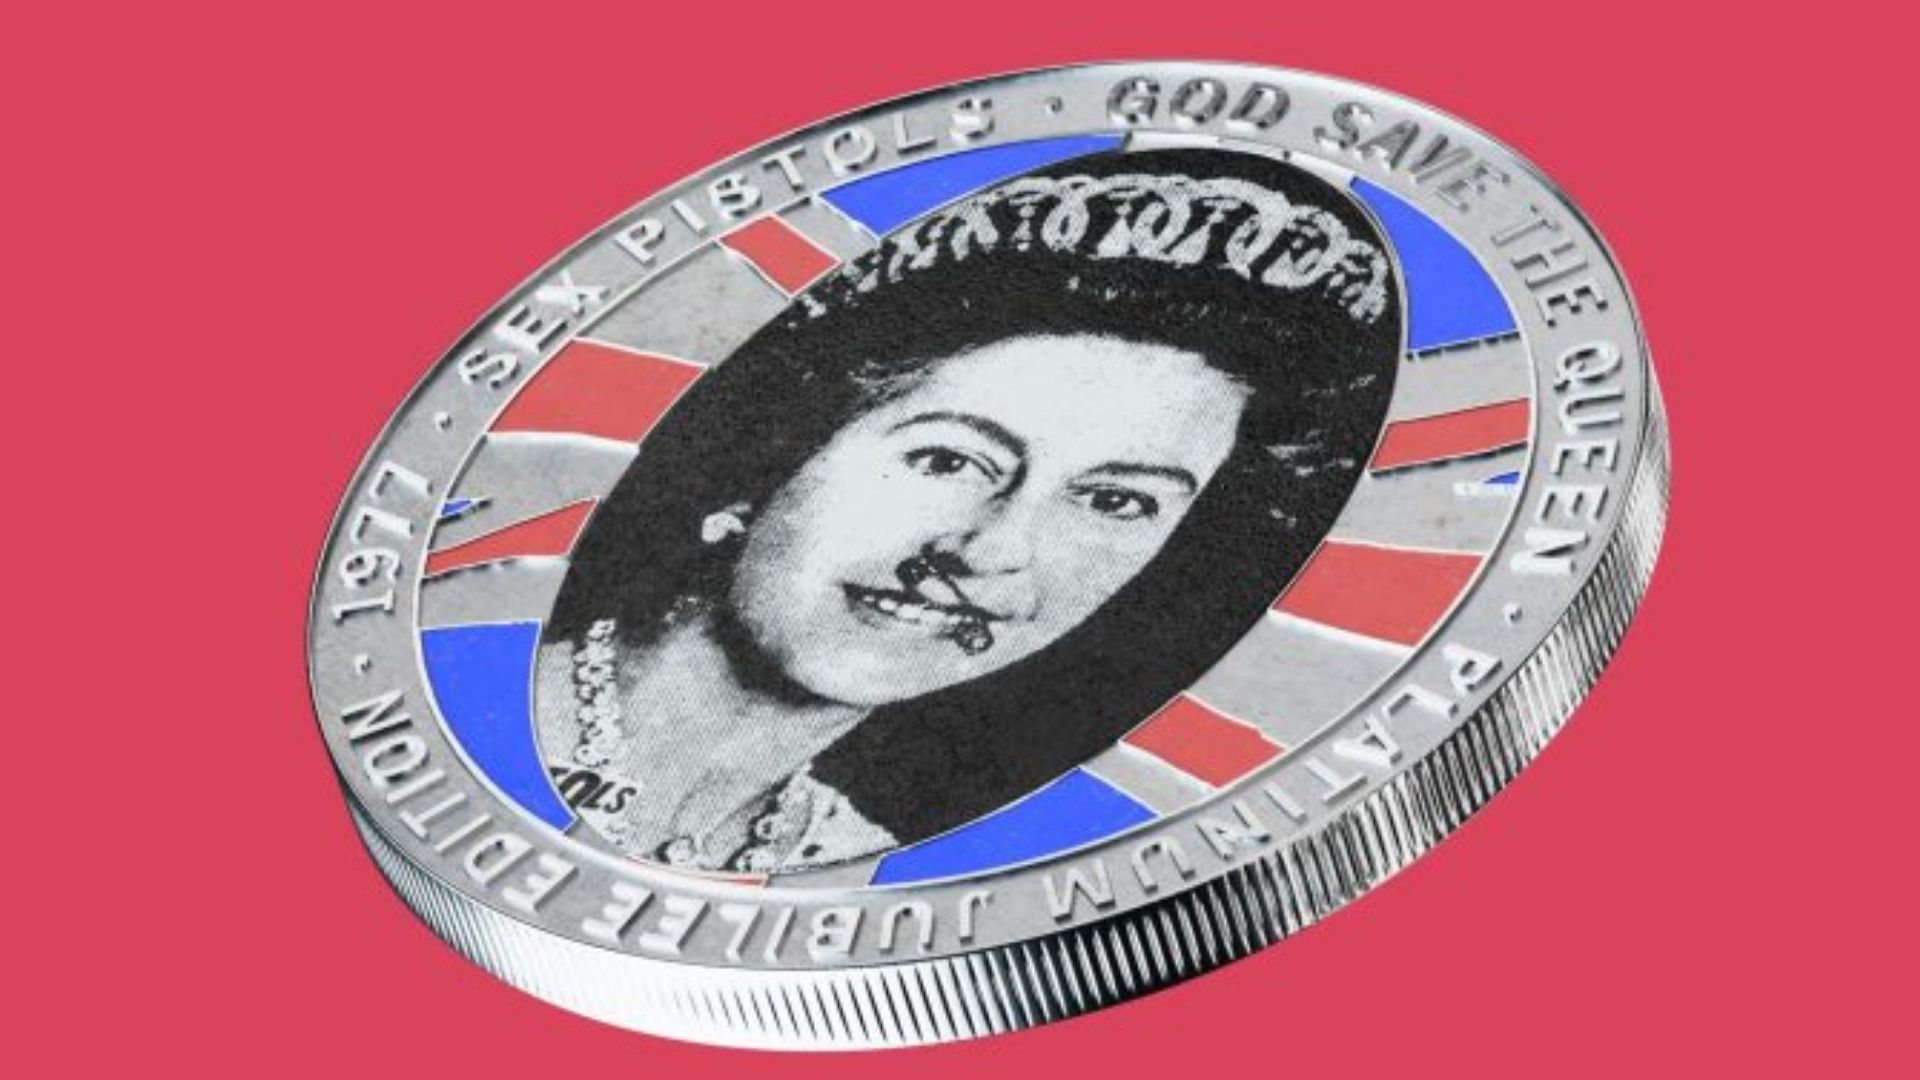 Sex Pistols Pistol Mint Commemorative Coin for Queen Elizabeth II's Platinum Jubilee